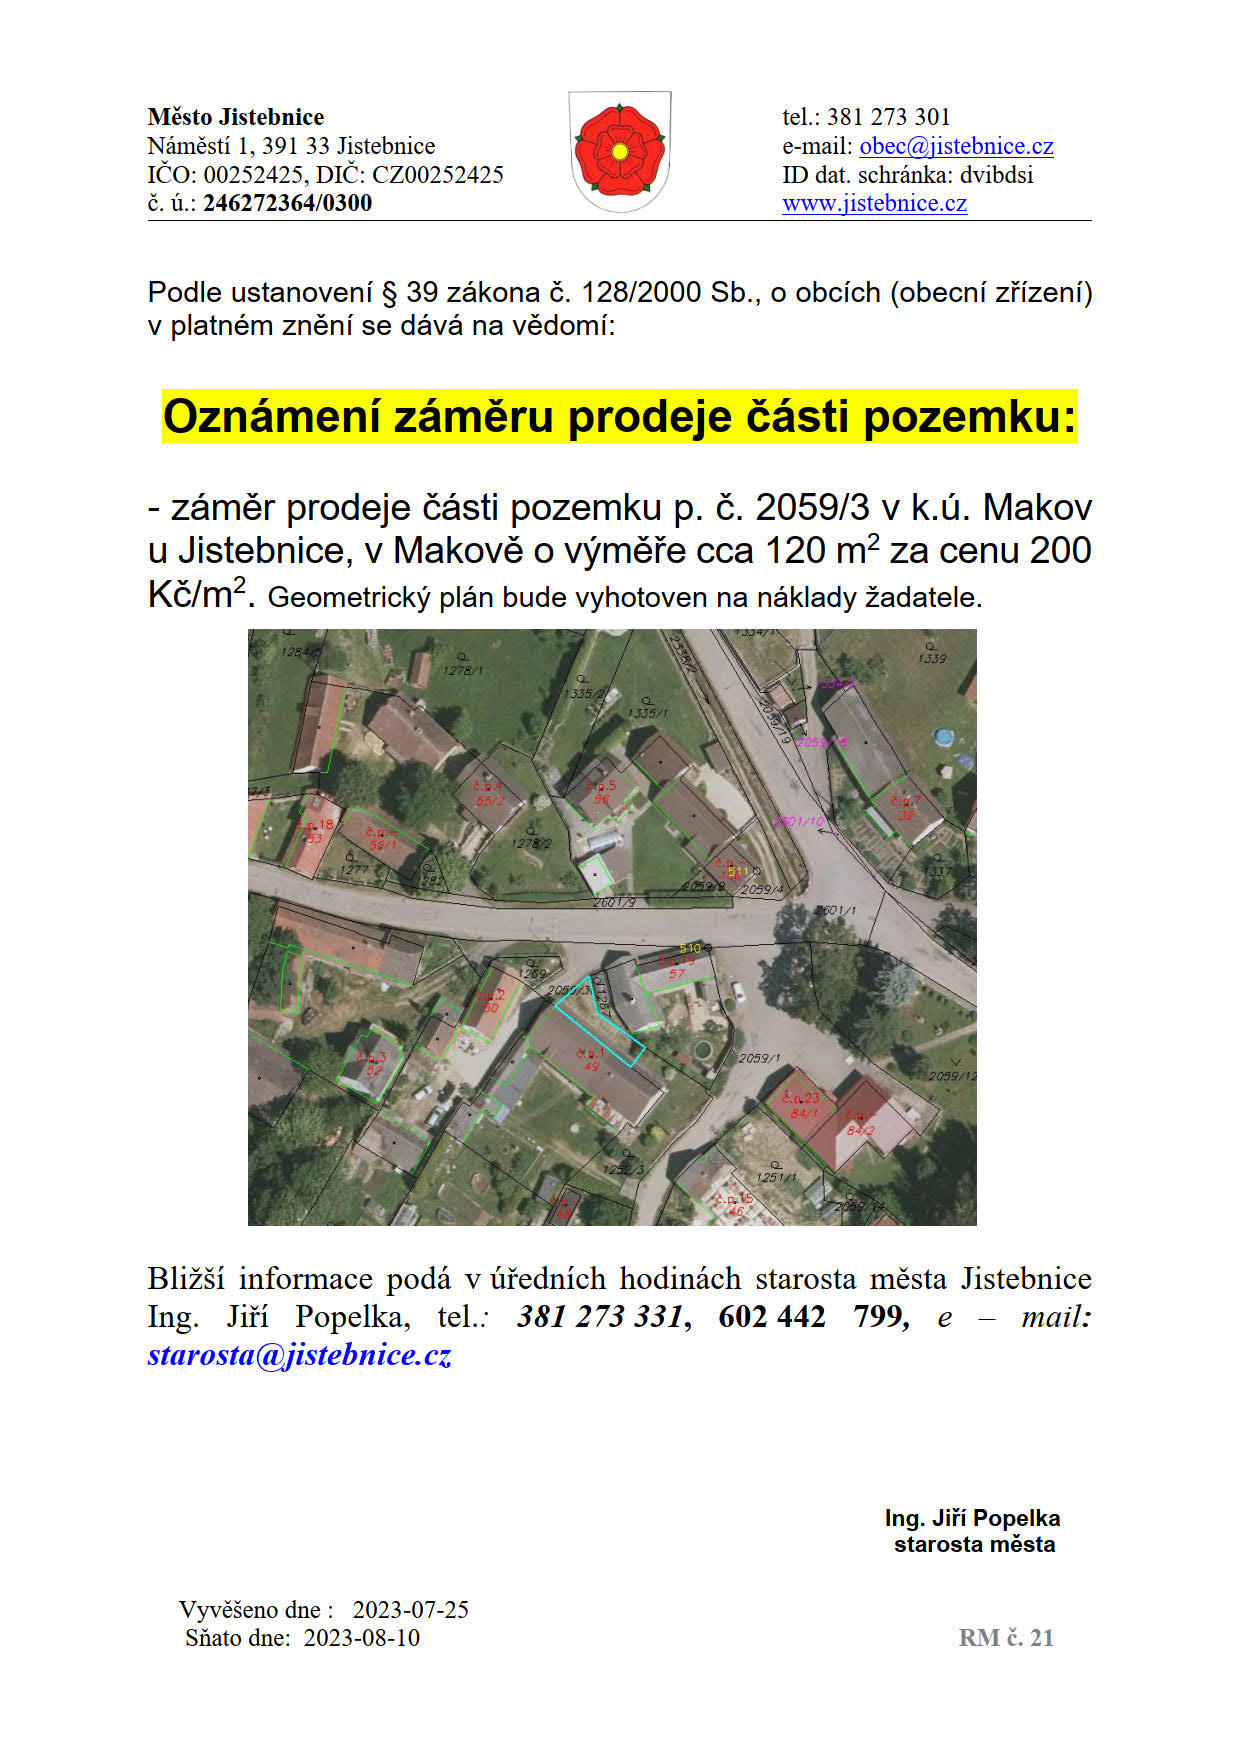 Oznámení záměru prodeje části pozemku v k.ú. Makov u Jistebnice, v Makově